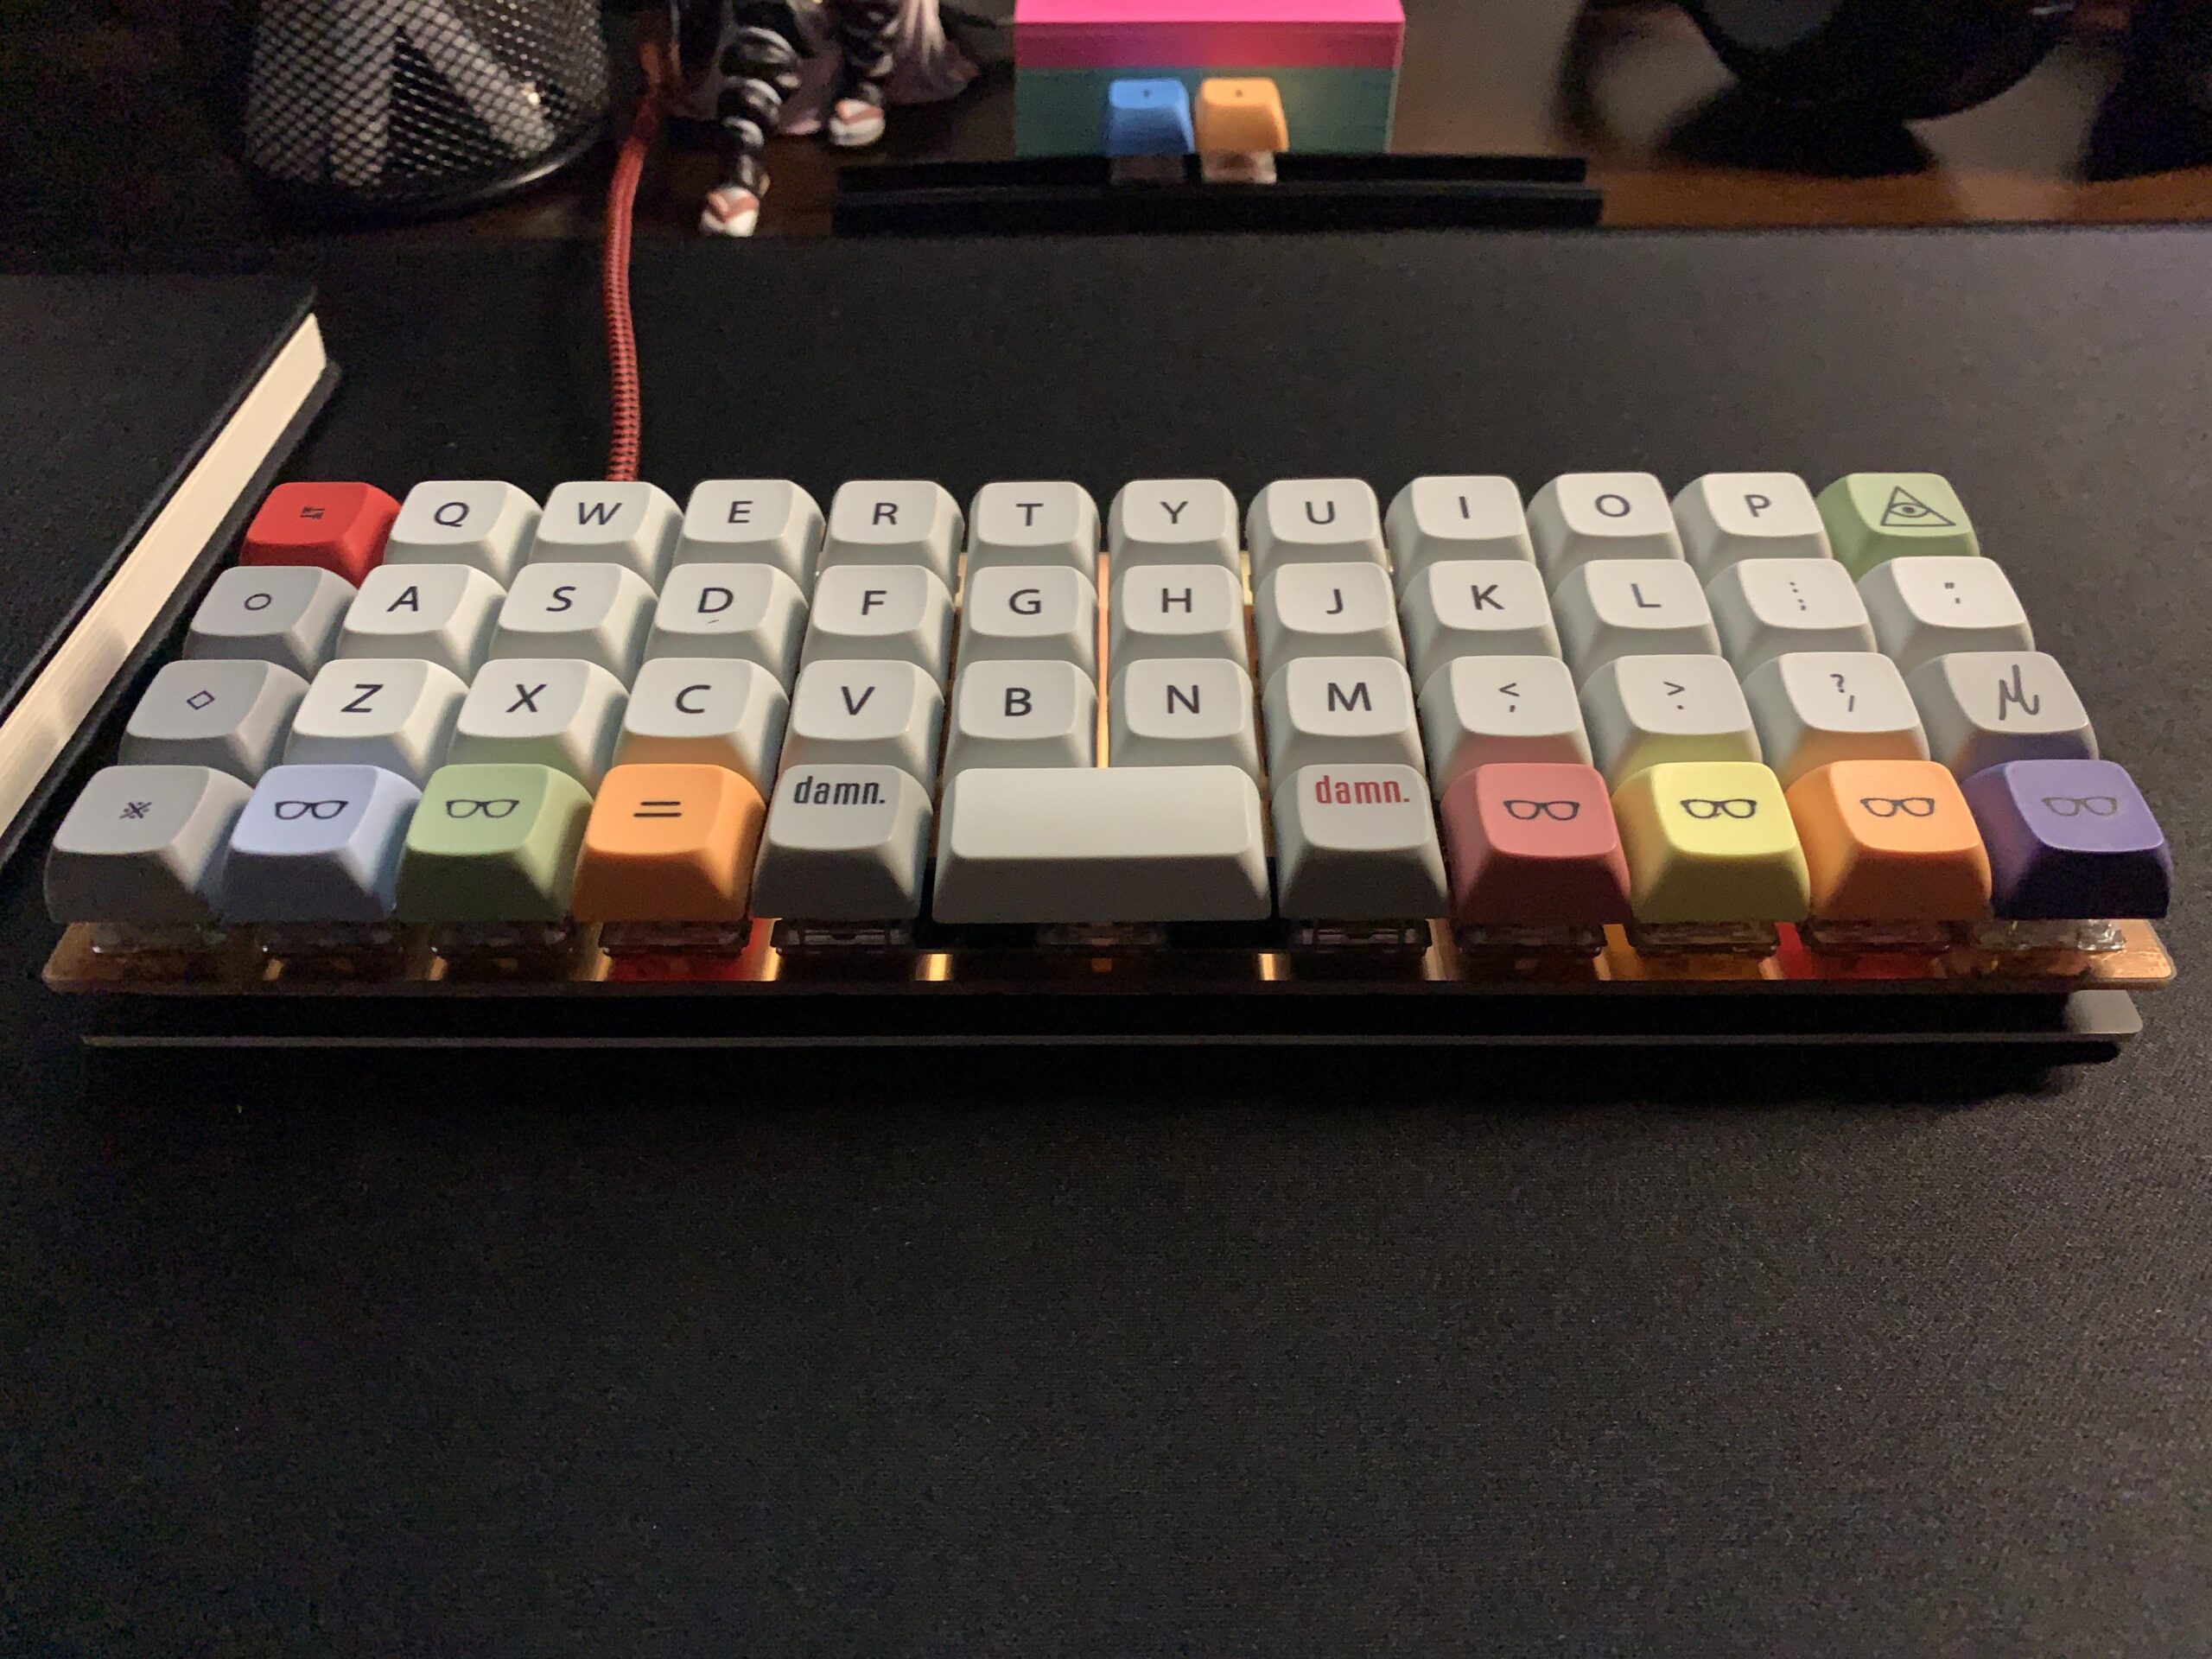 Planck Keyboard